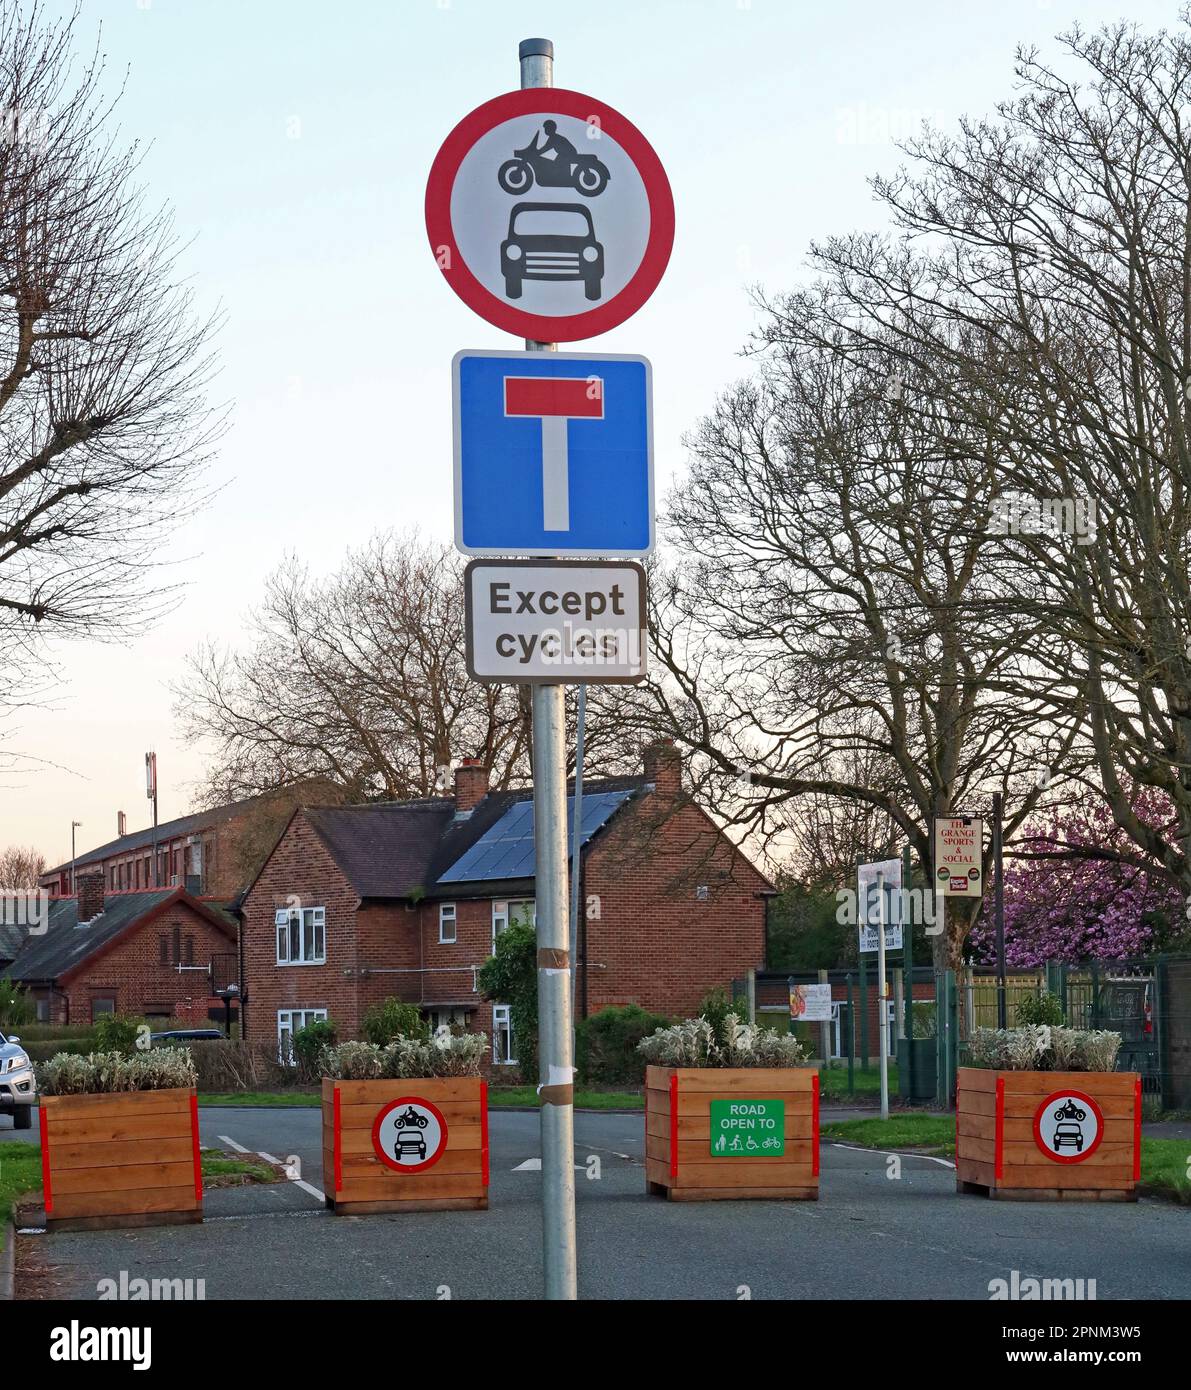 No through Road, No Vehicles, in Grange Avenue, Westy, Latchford près de LTN, Warrington, Cheshire, Angleterre, Royaume-Uni, WA4 1JH Banque D'Images